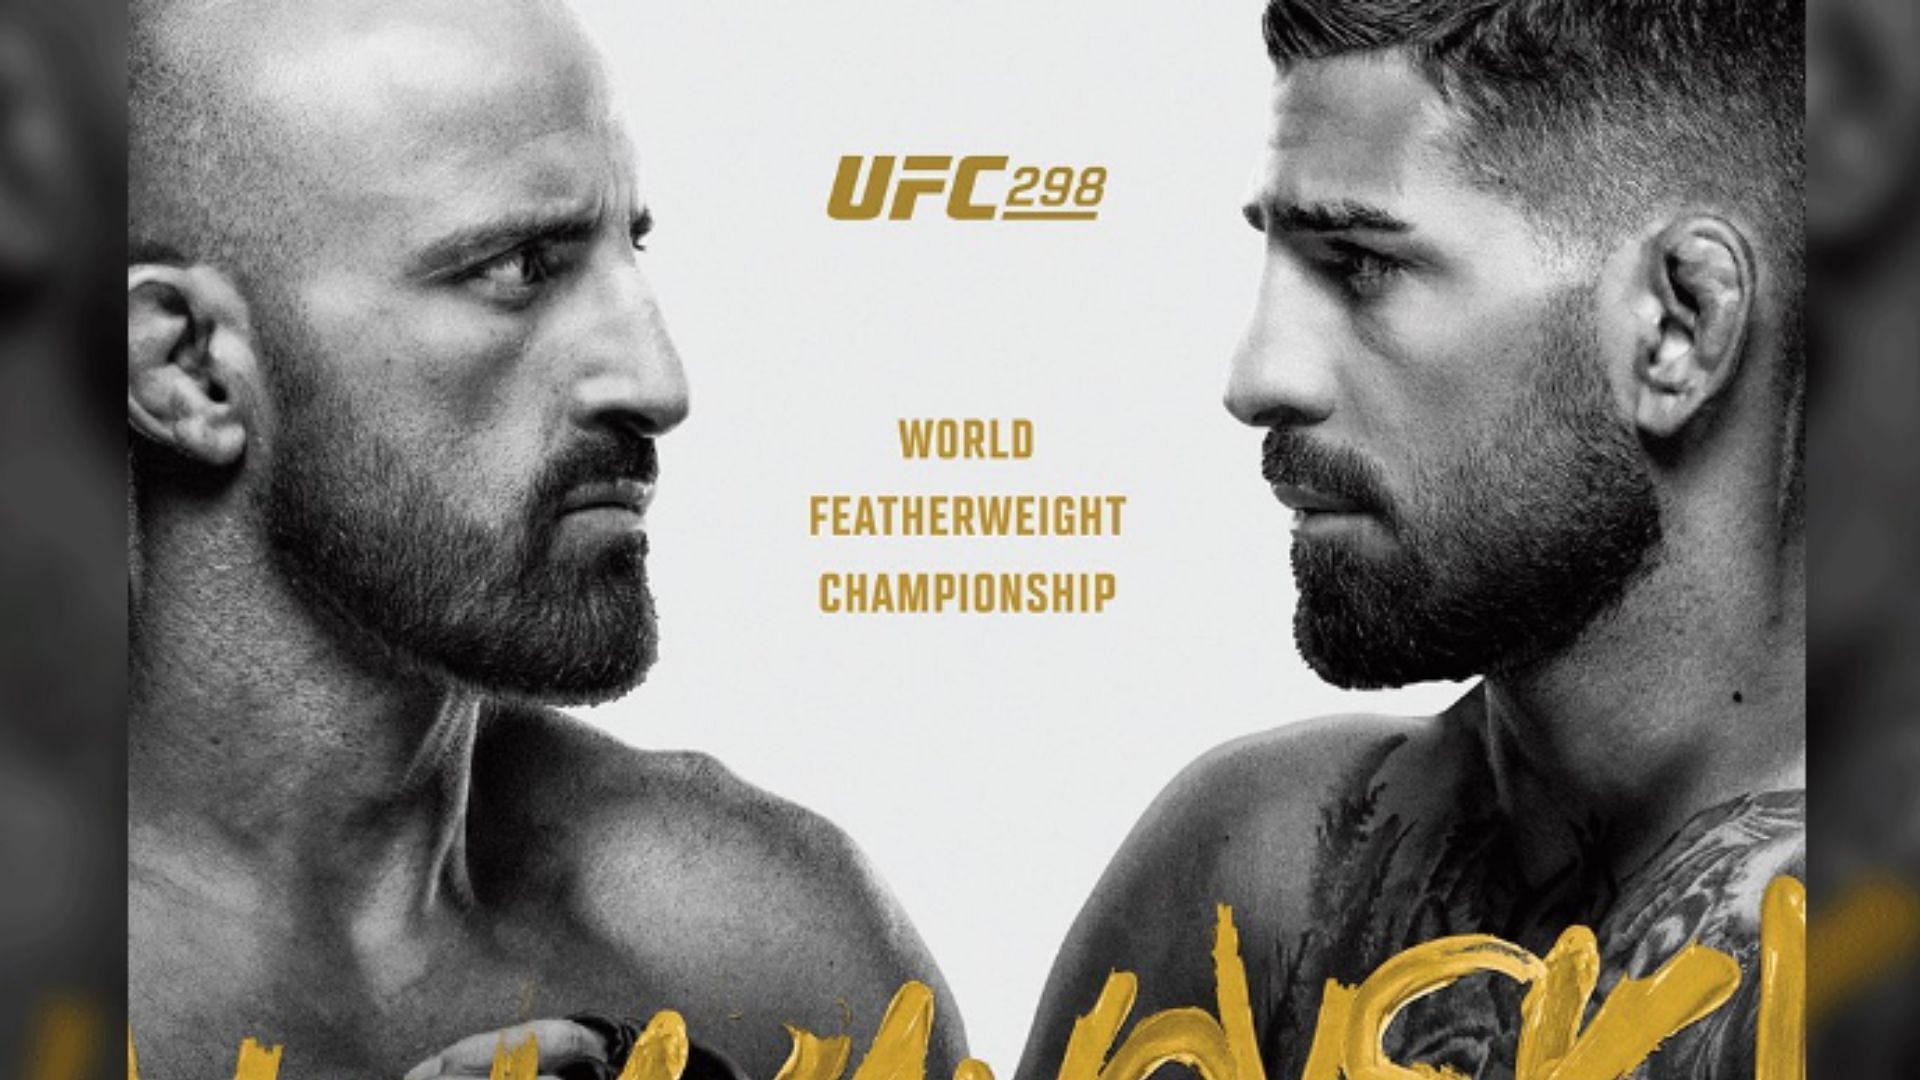 UFC 298 poster [Image courtesy of @ufc on X]